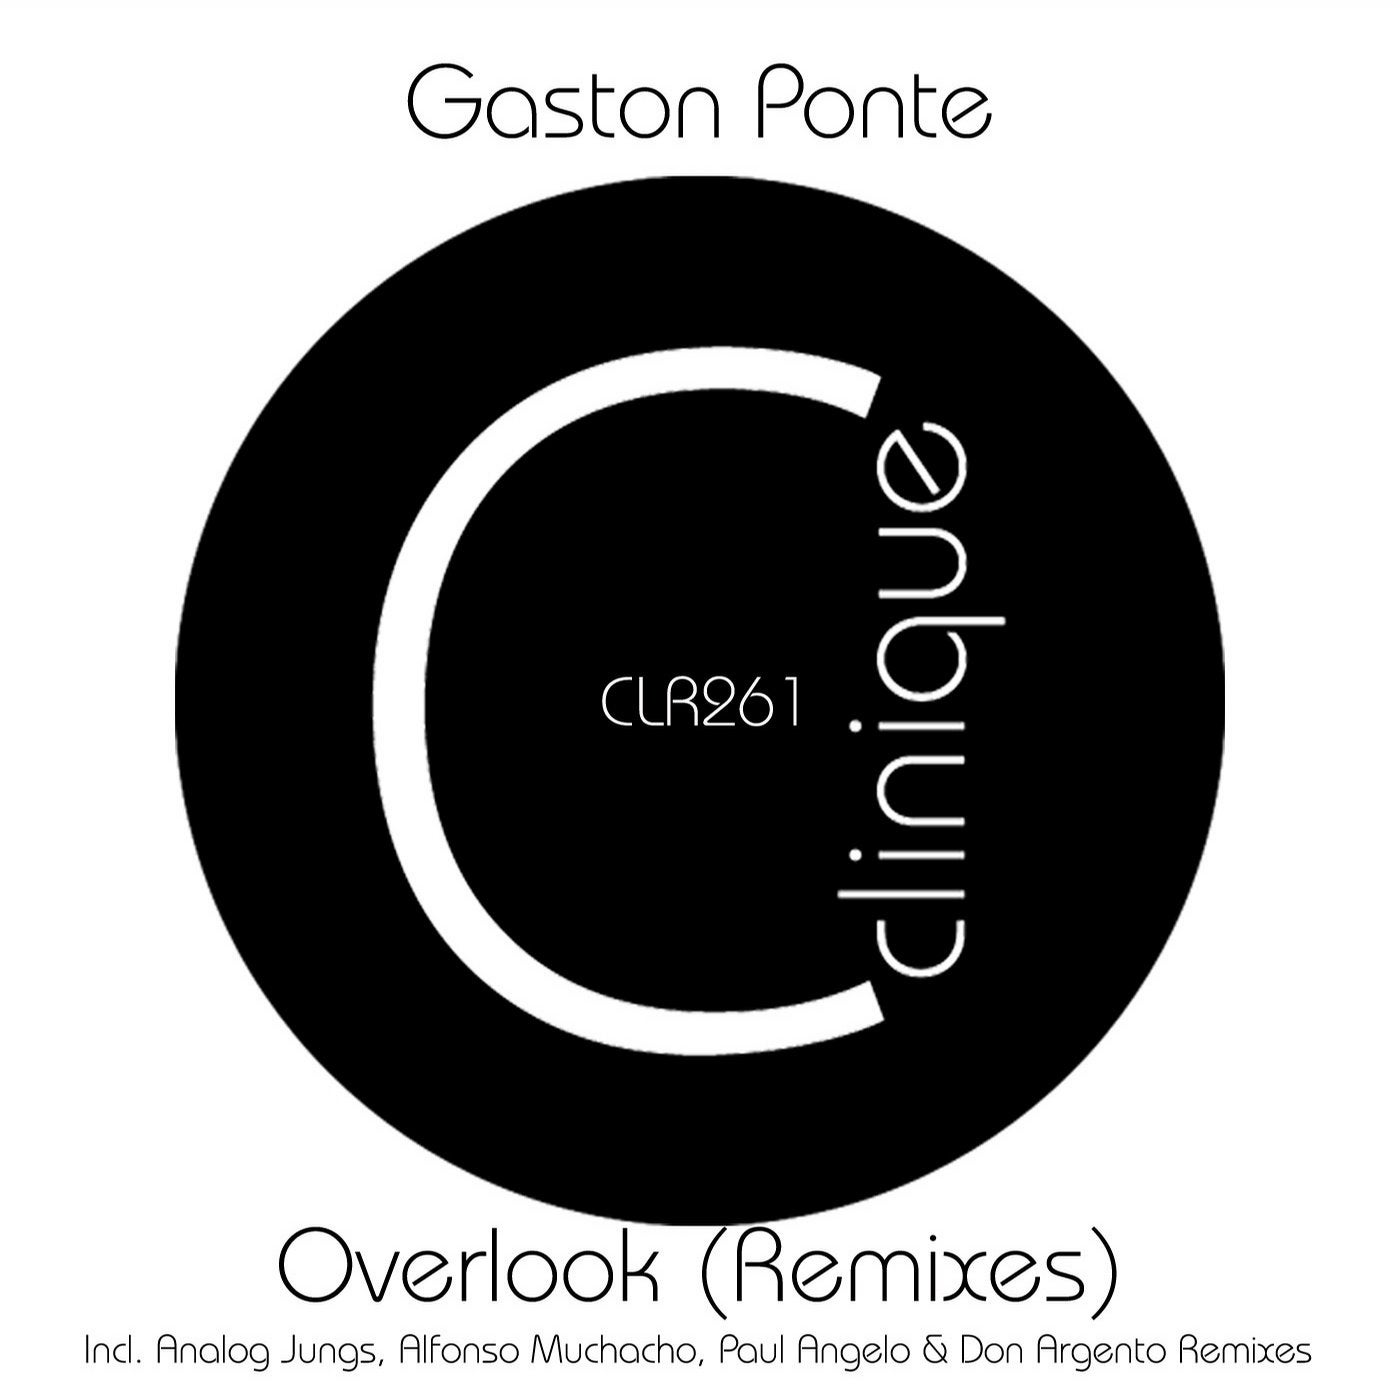 Overlook (Remixes)